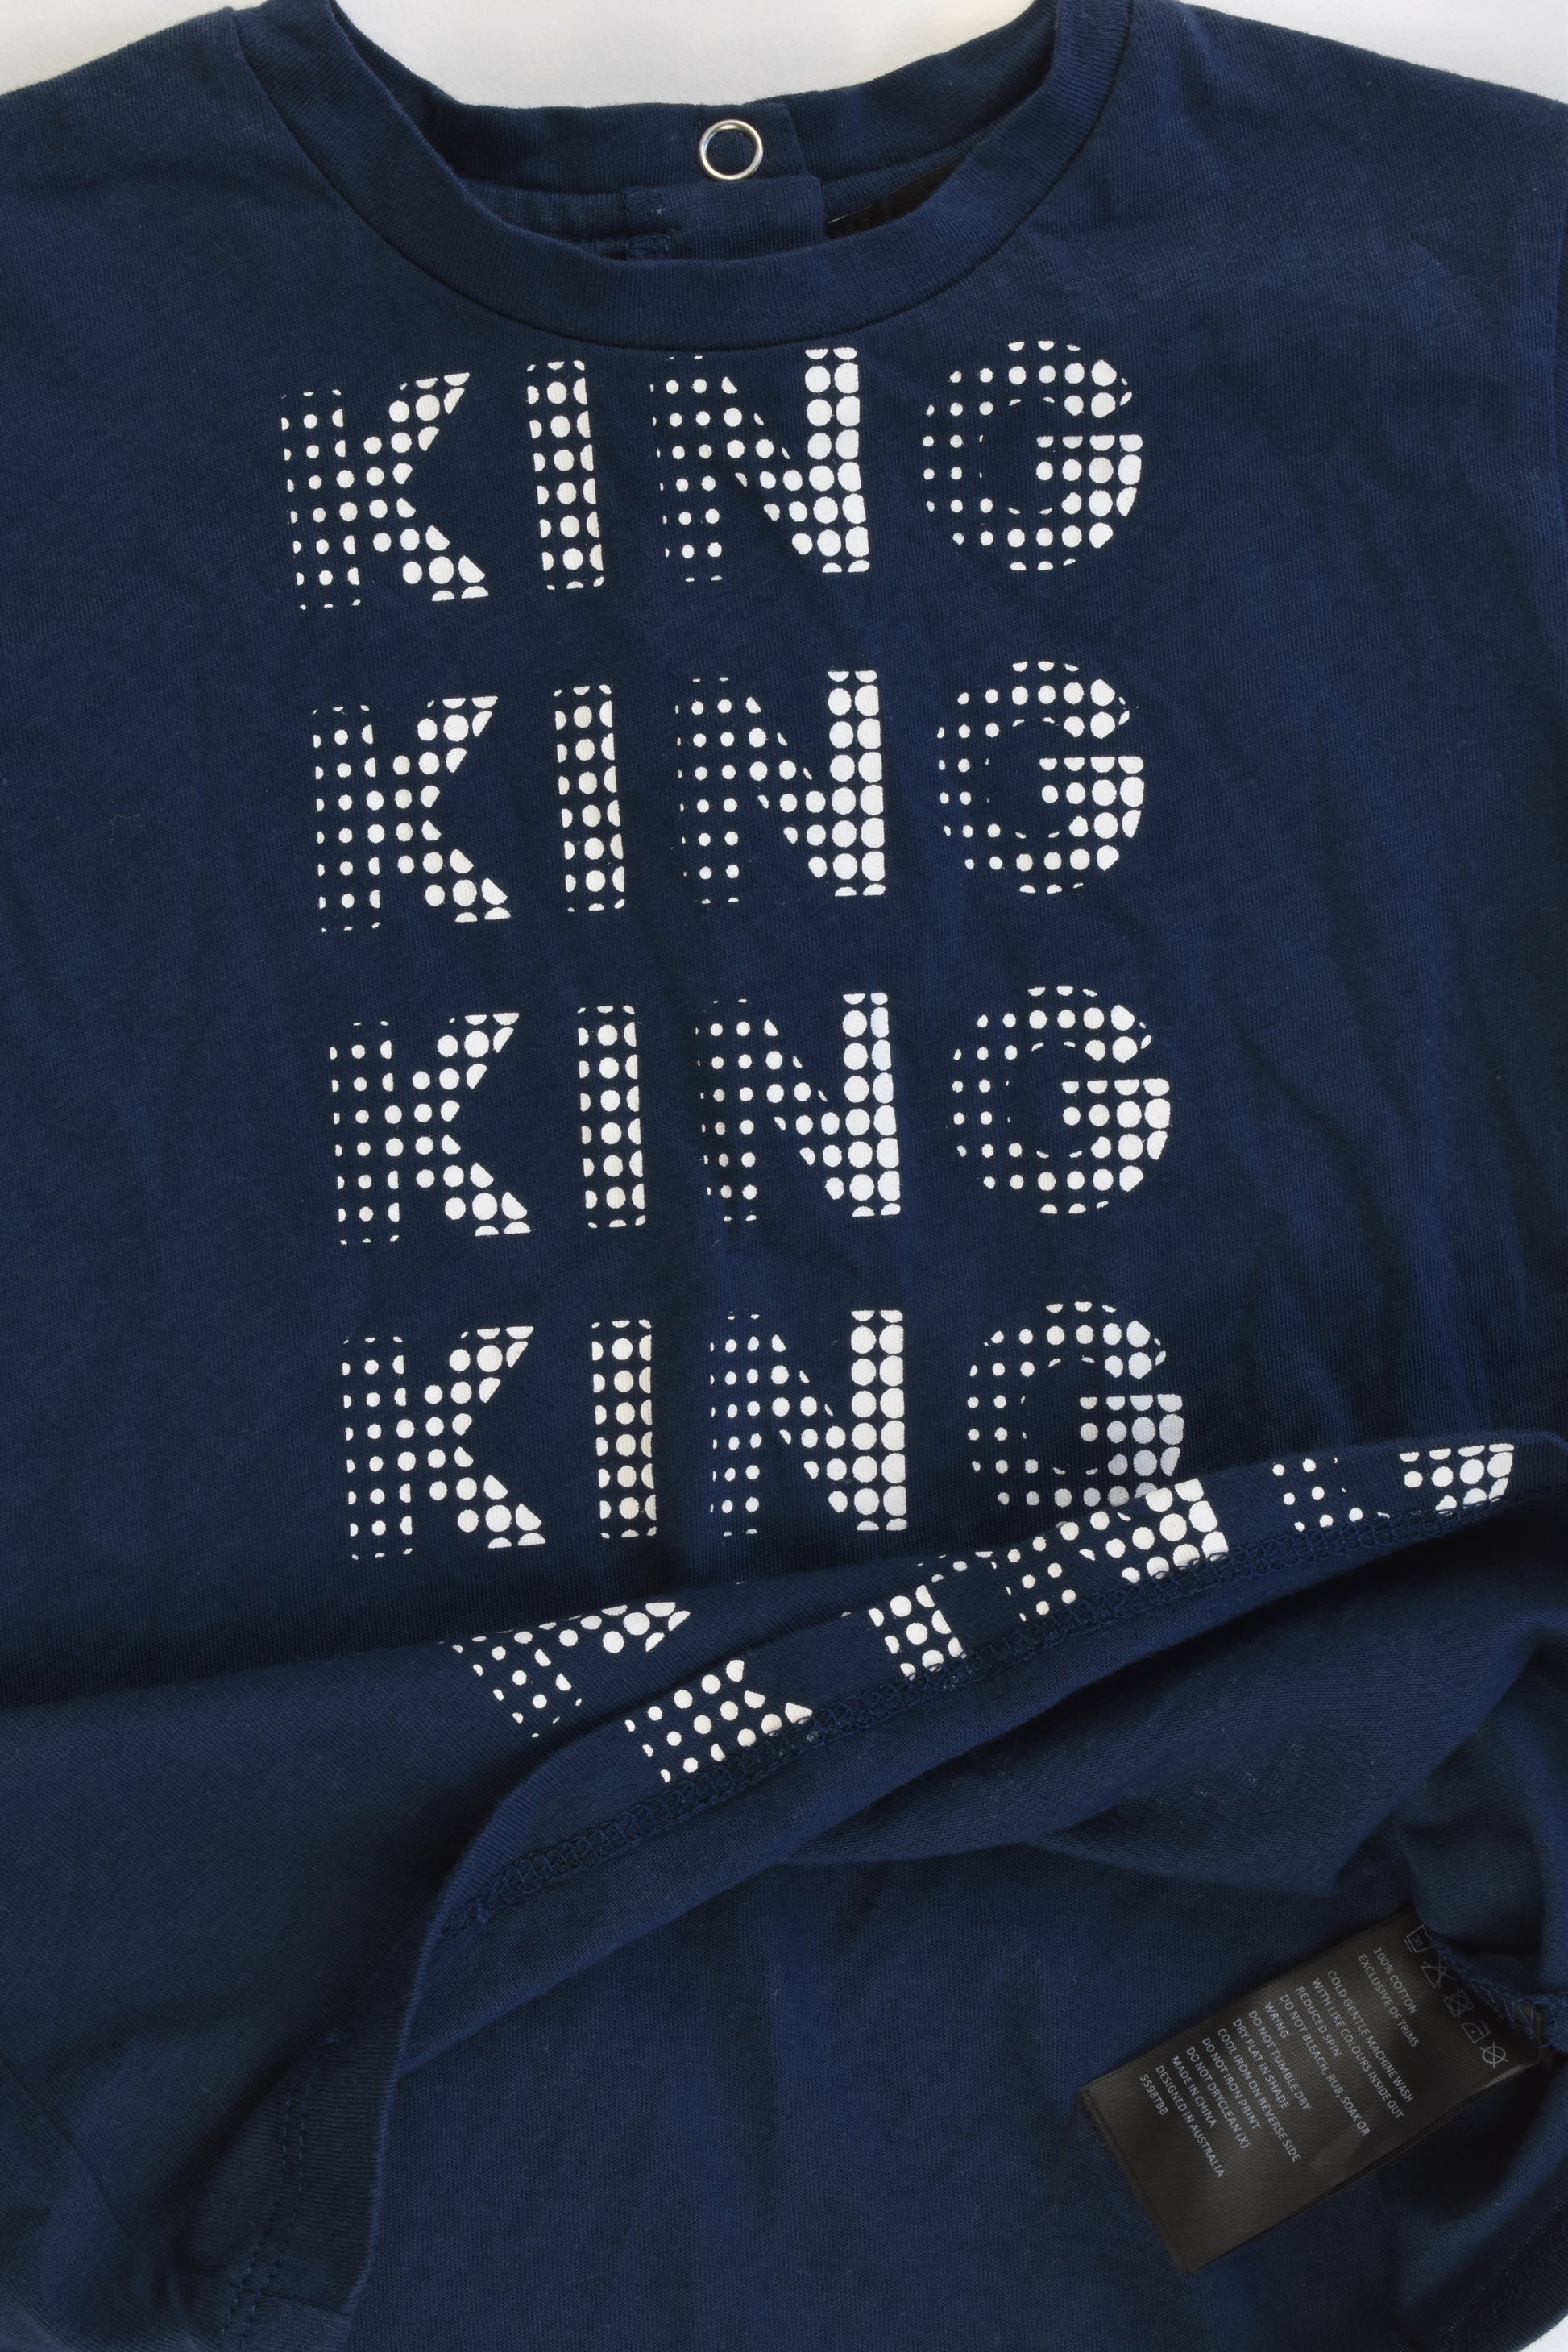 Bardot Junior Size 1 (12-18 months) 'King' T-shirt